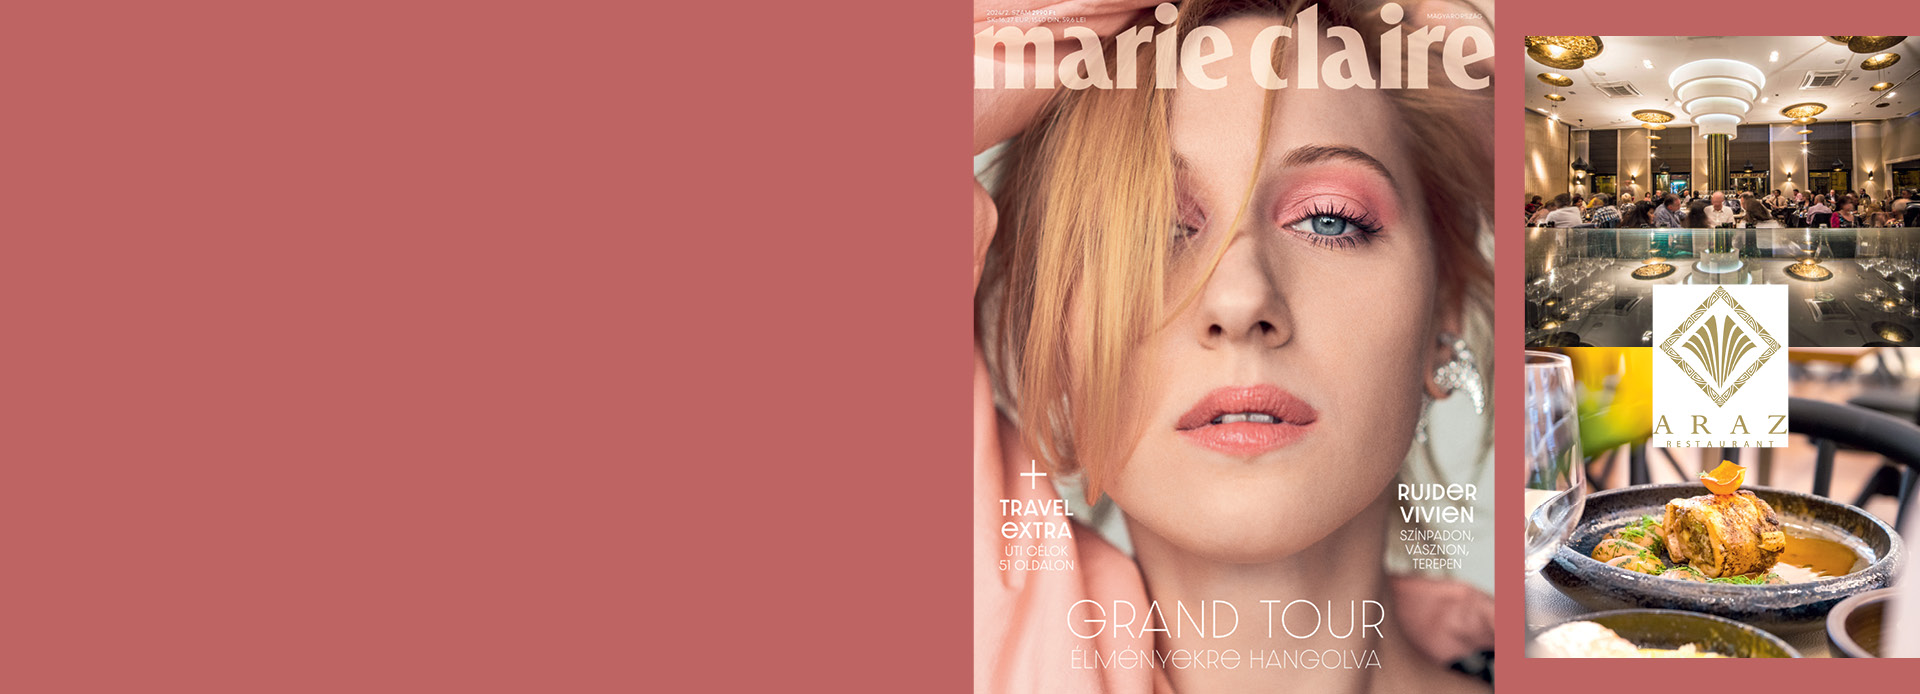 Fizess elő most a Marie Claire magazinra és legyen tiéd a kétfős borvacsorák egyike!